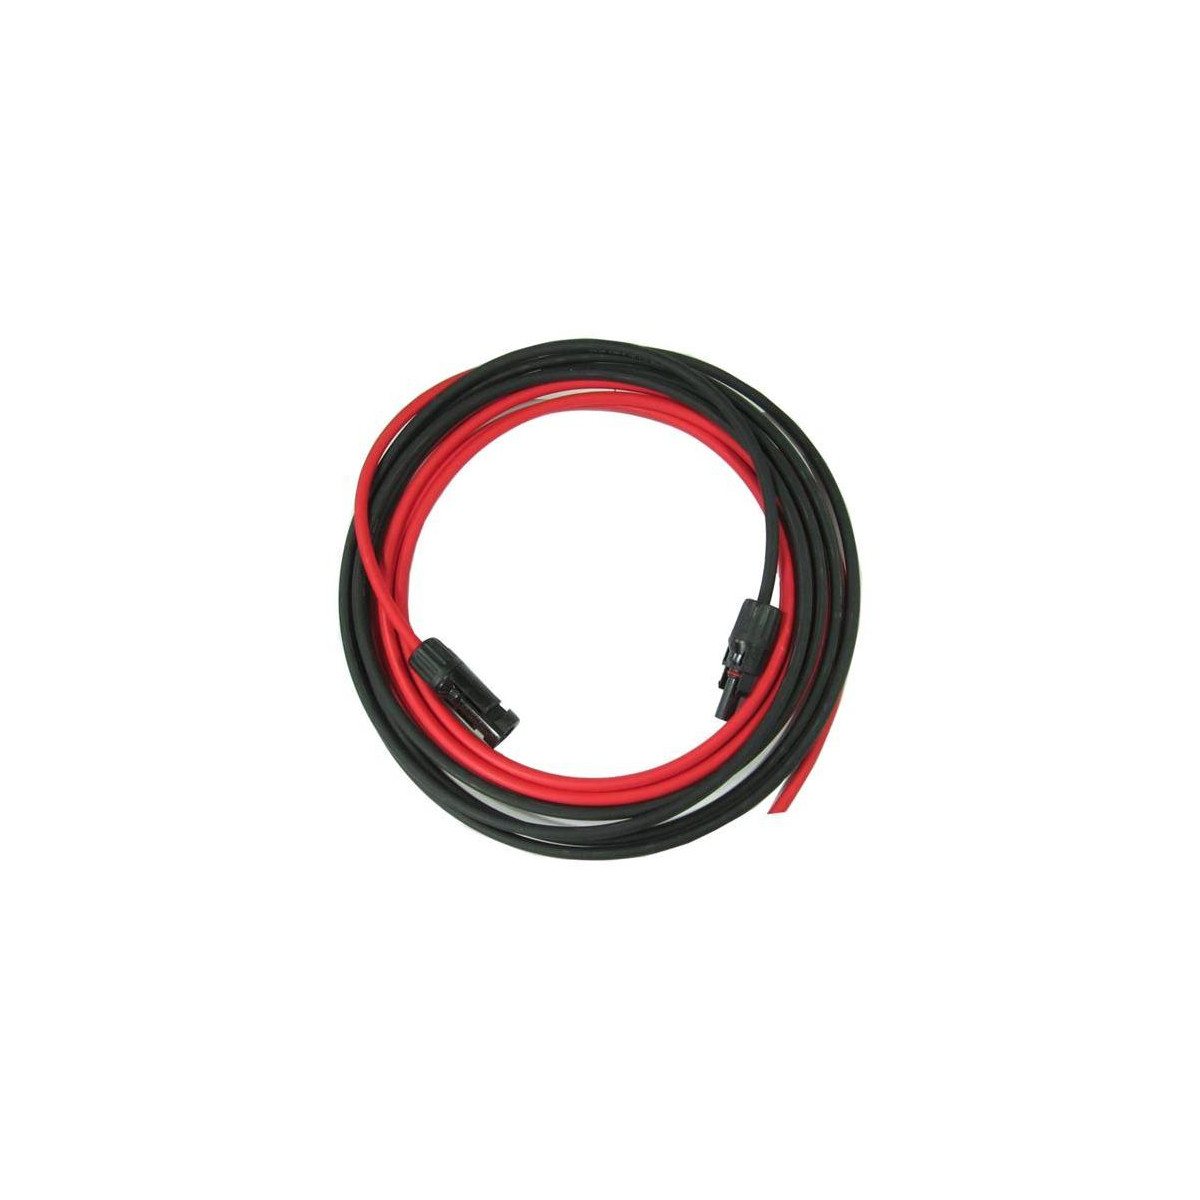 More about Solární kabel 6mm2, červený+černý s konektory MC4, 10m